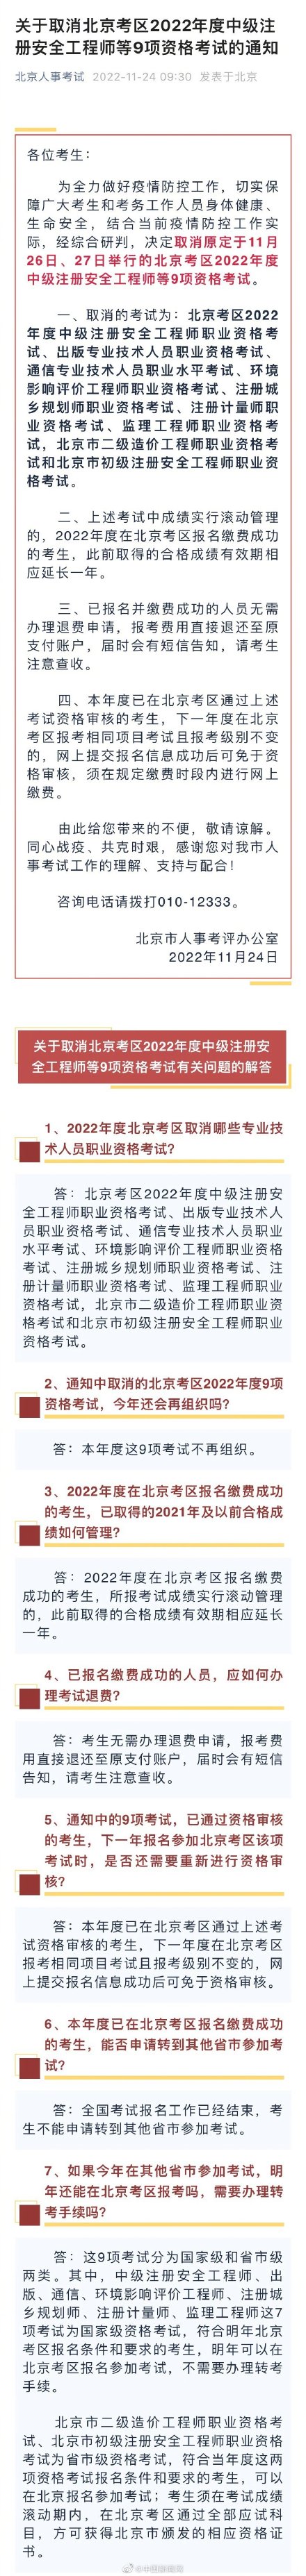 北京取消2022年度9项资格考试